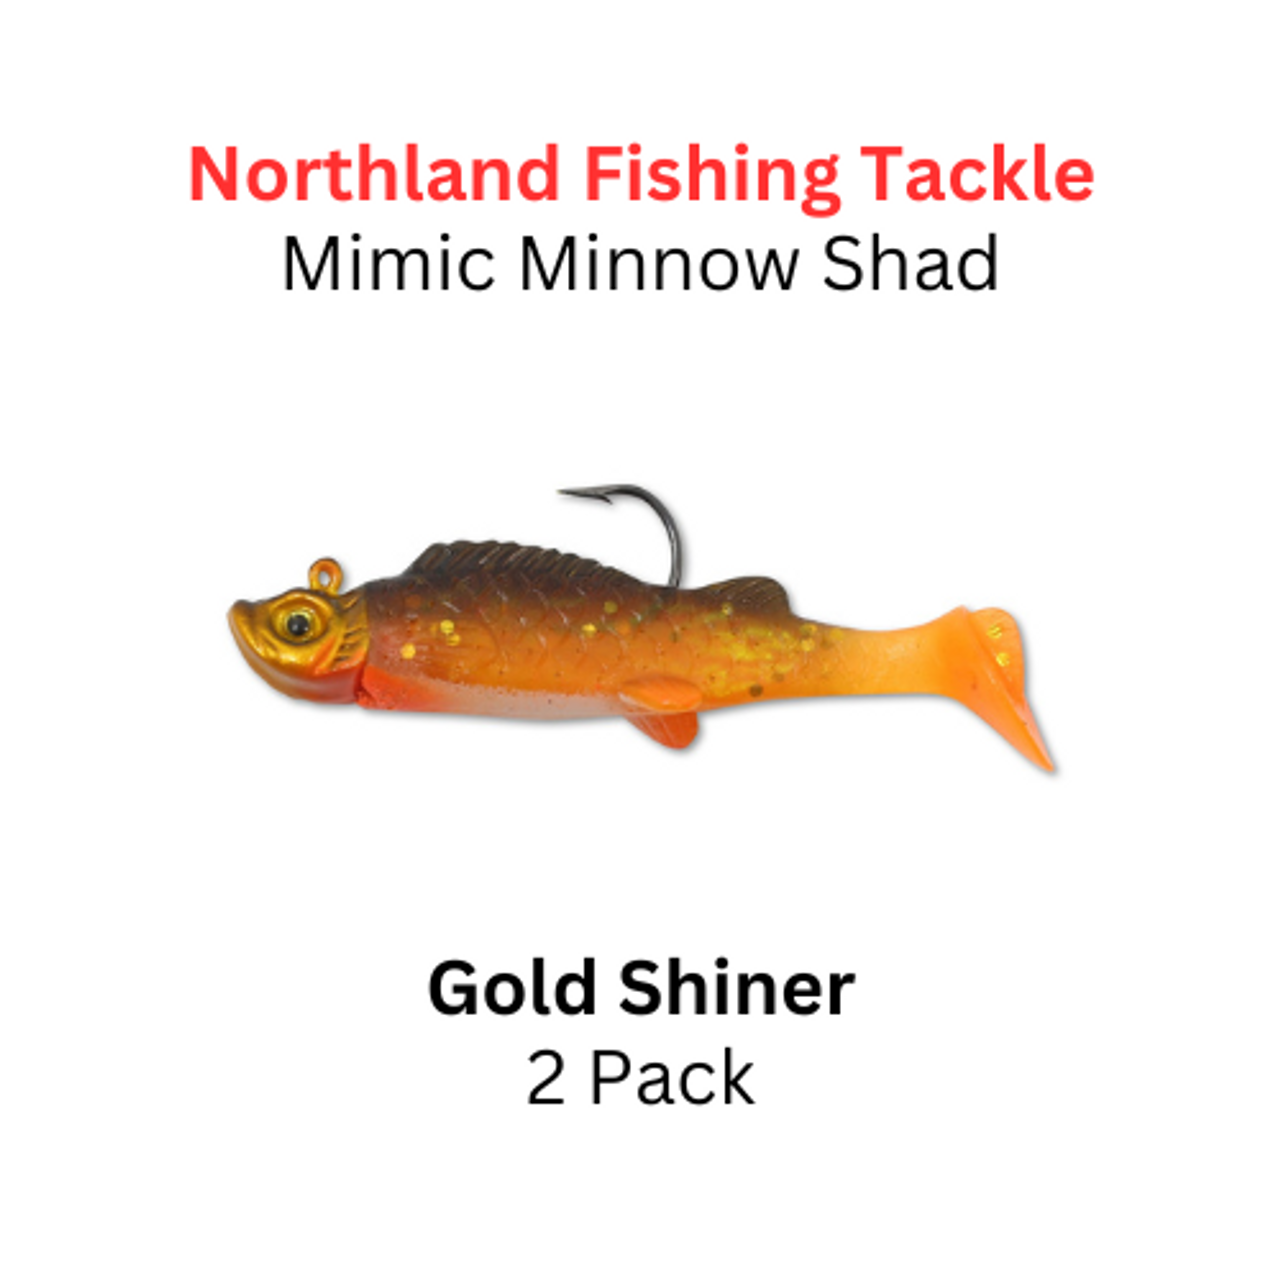 Northland Fishing Tackle 1/16oz Gold Shiner Mimic Minnow Shad